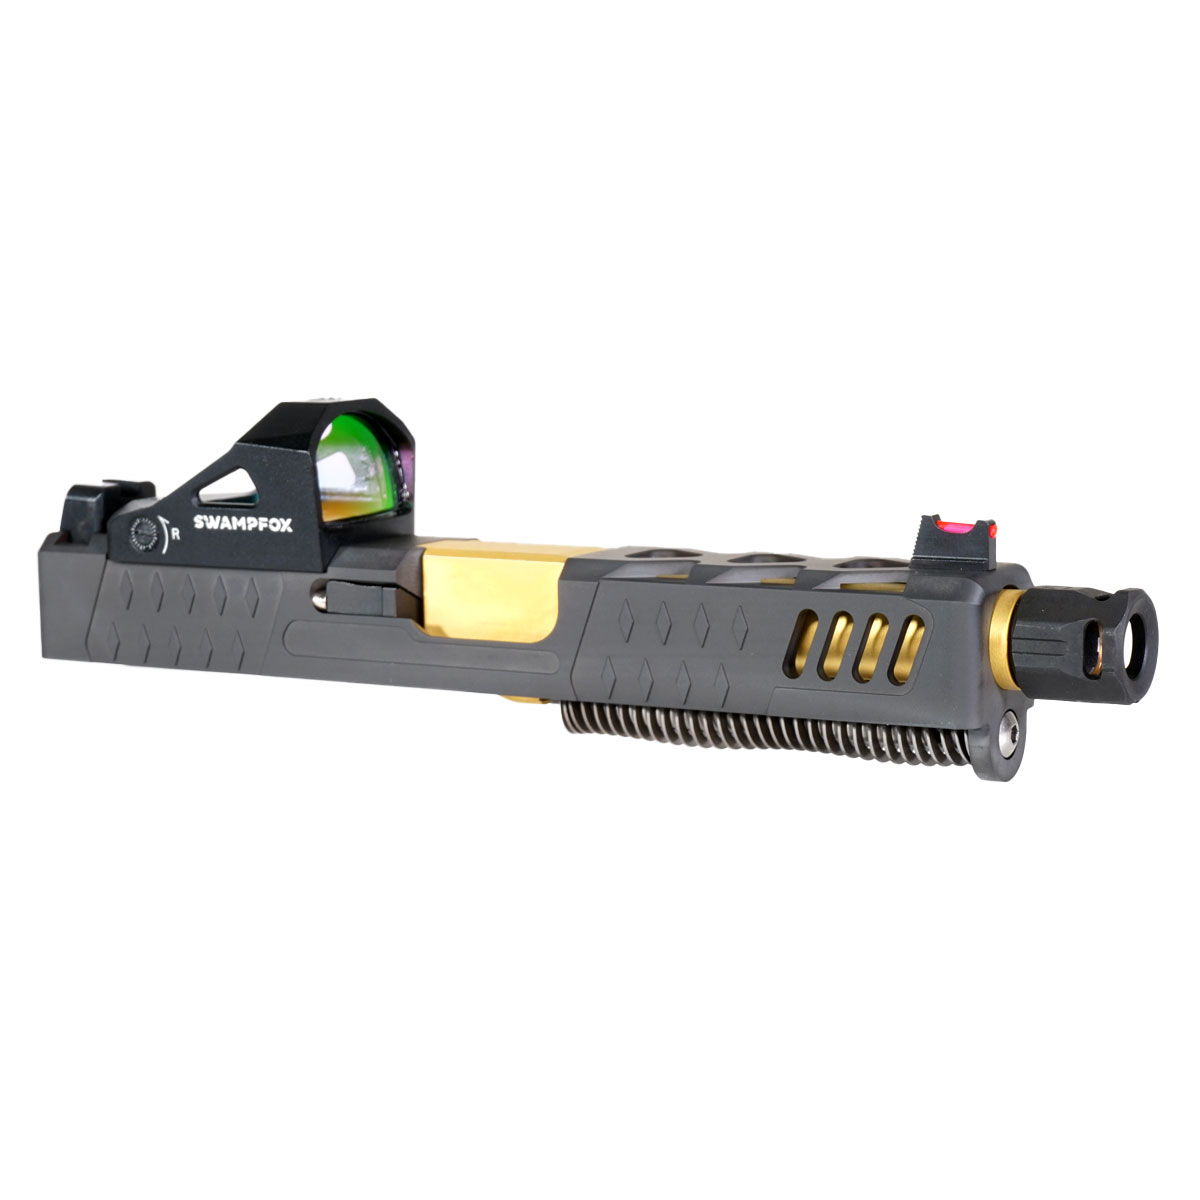 DDS 'Parc Ferme' 9mm Complete Slide Kit - Glock 19 Gen 1-3 Compatible